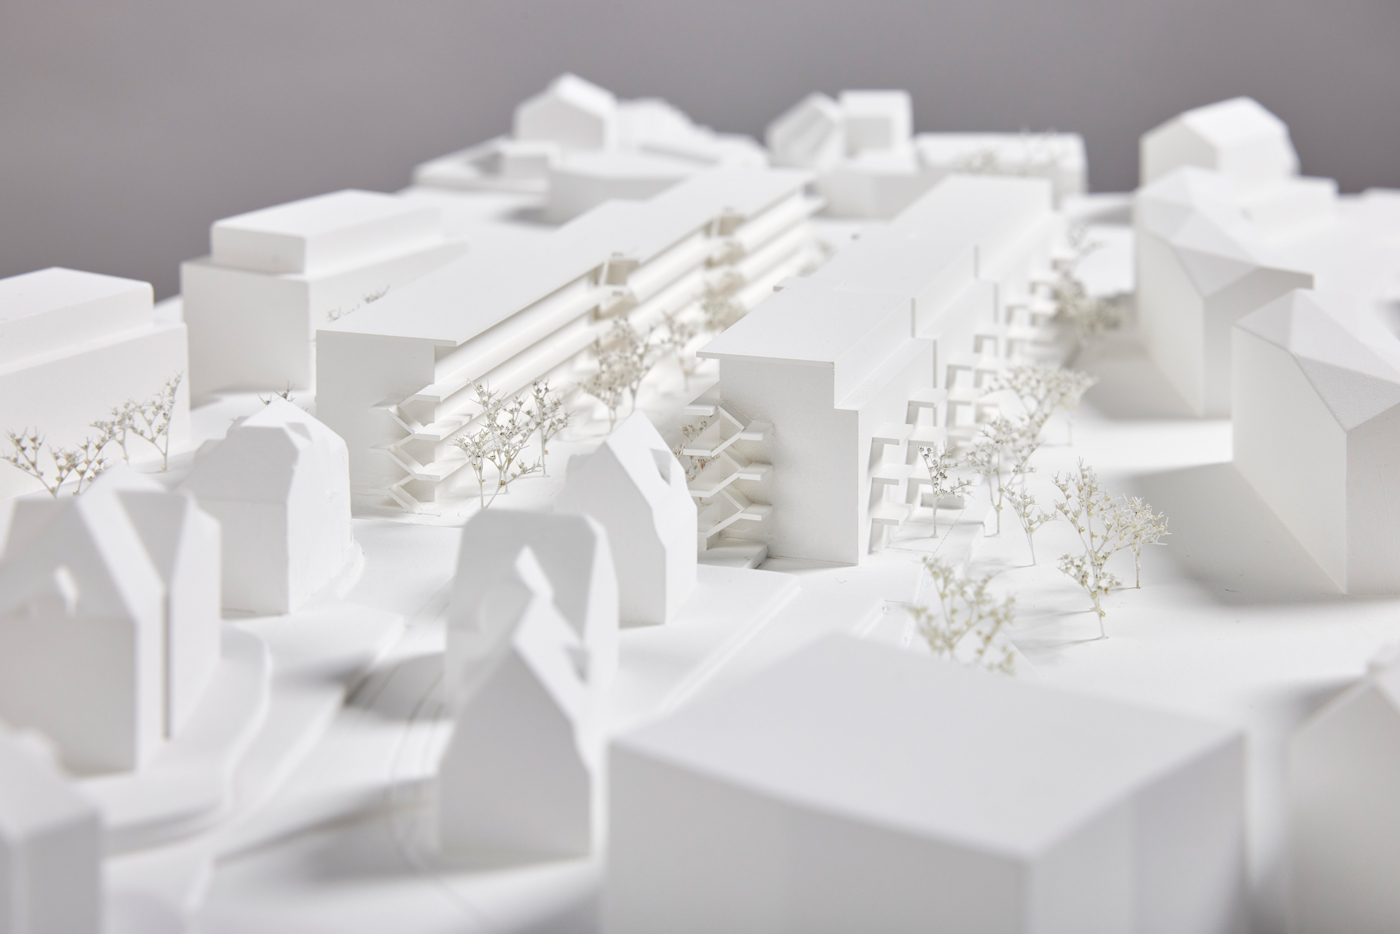 buan architekten – Projektwettbewerb Am Rain Luzern – Situationsmodell Westseite